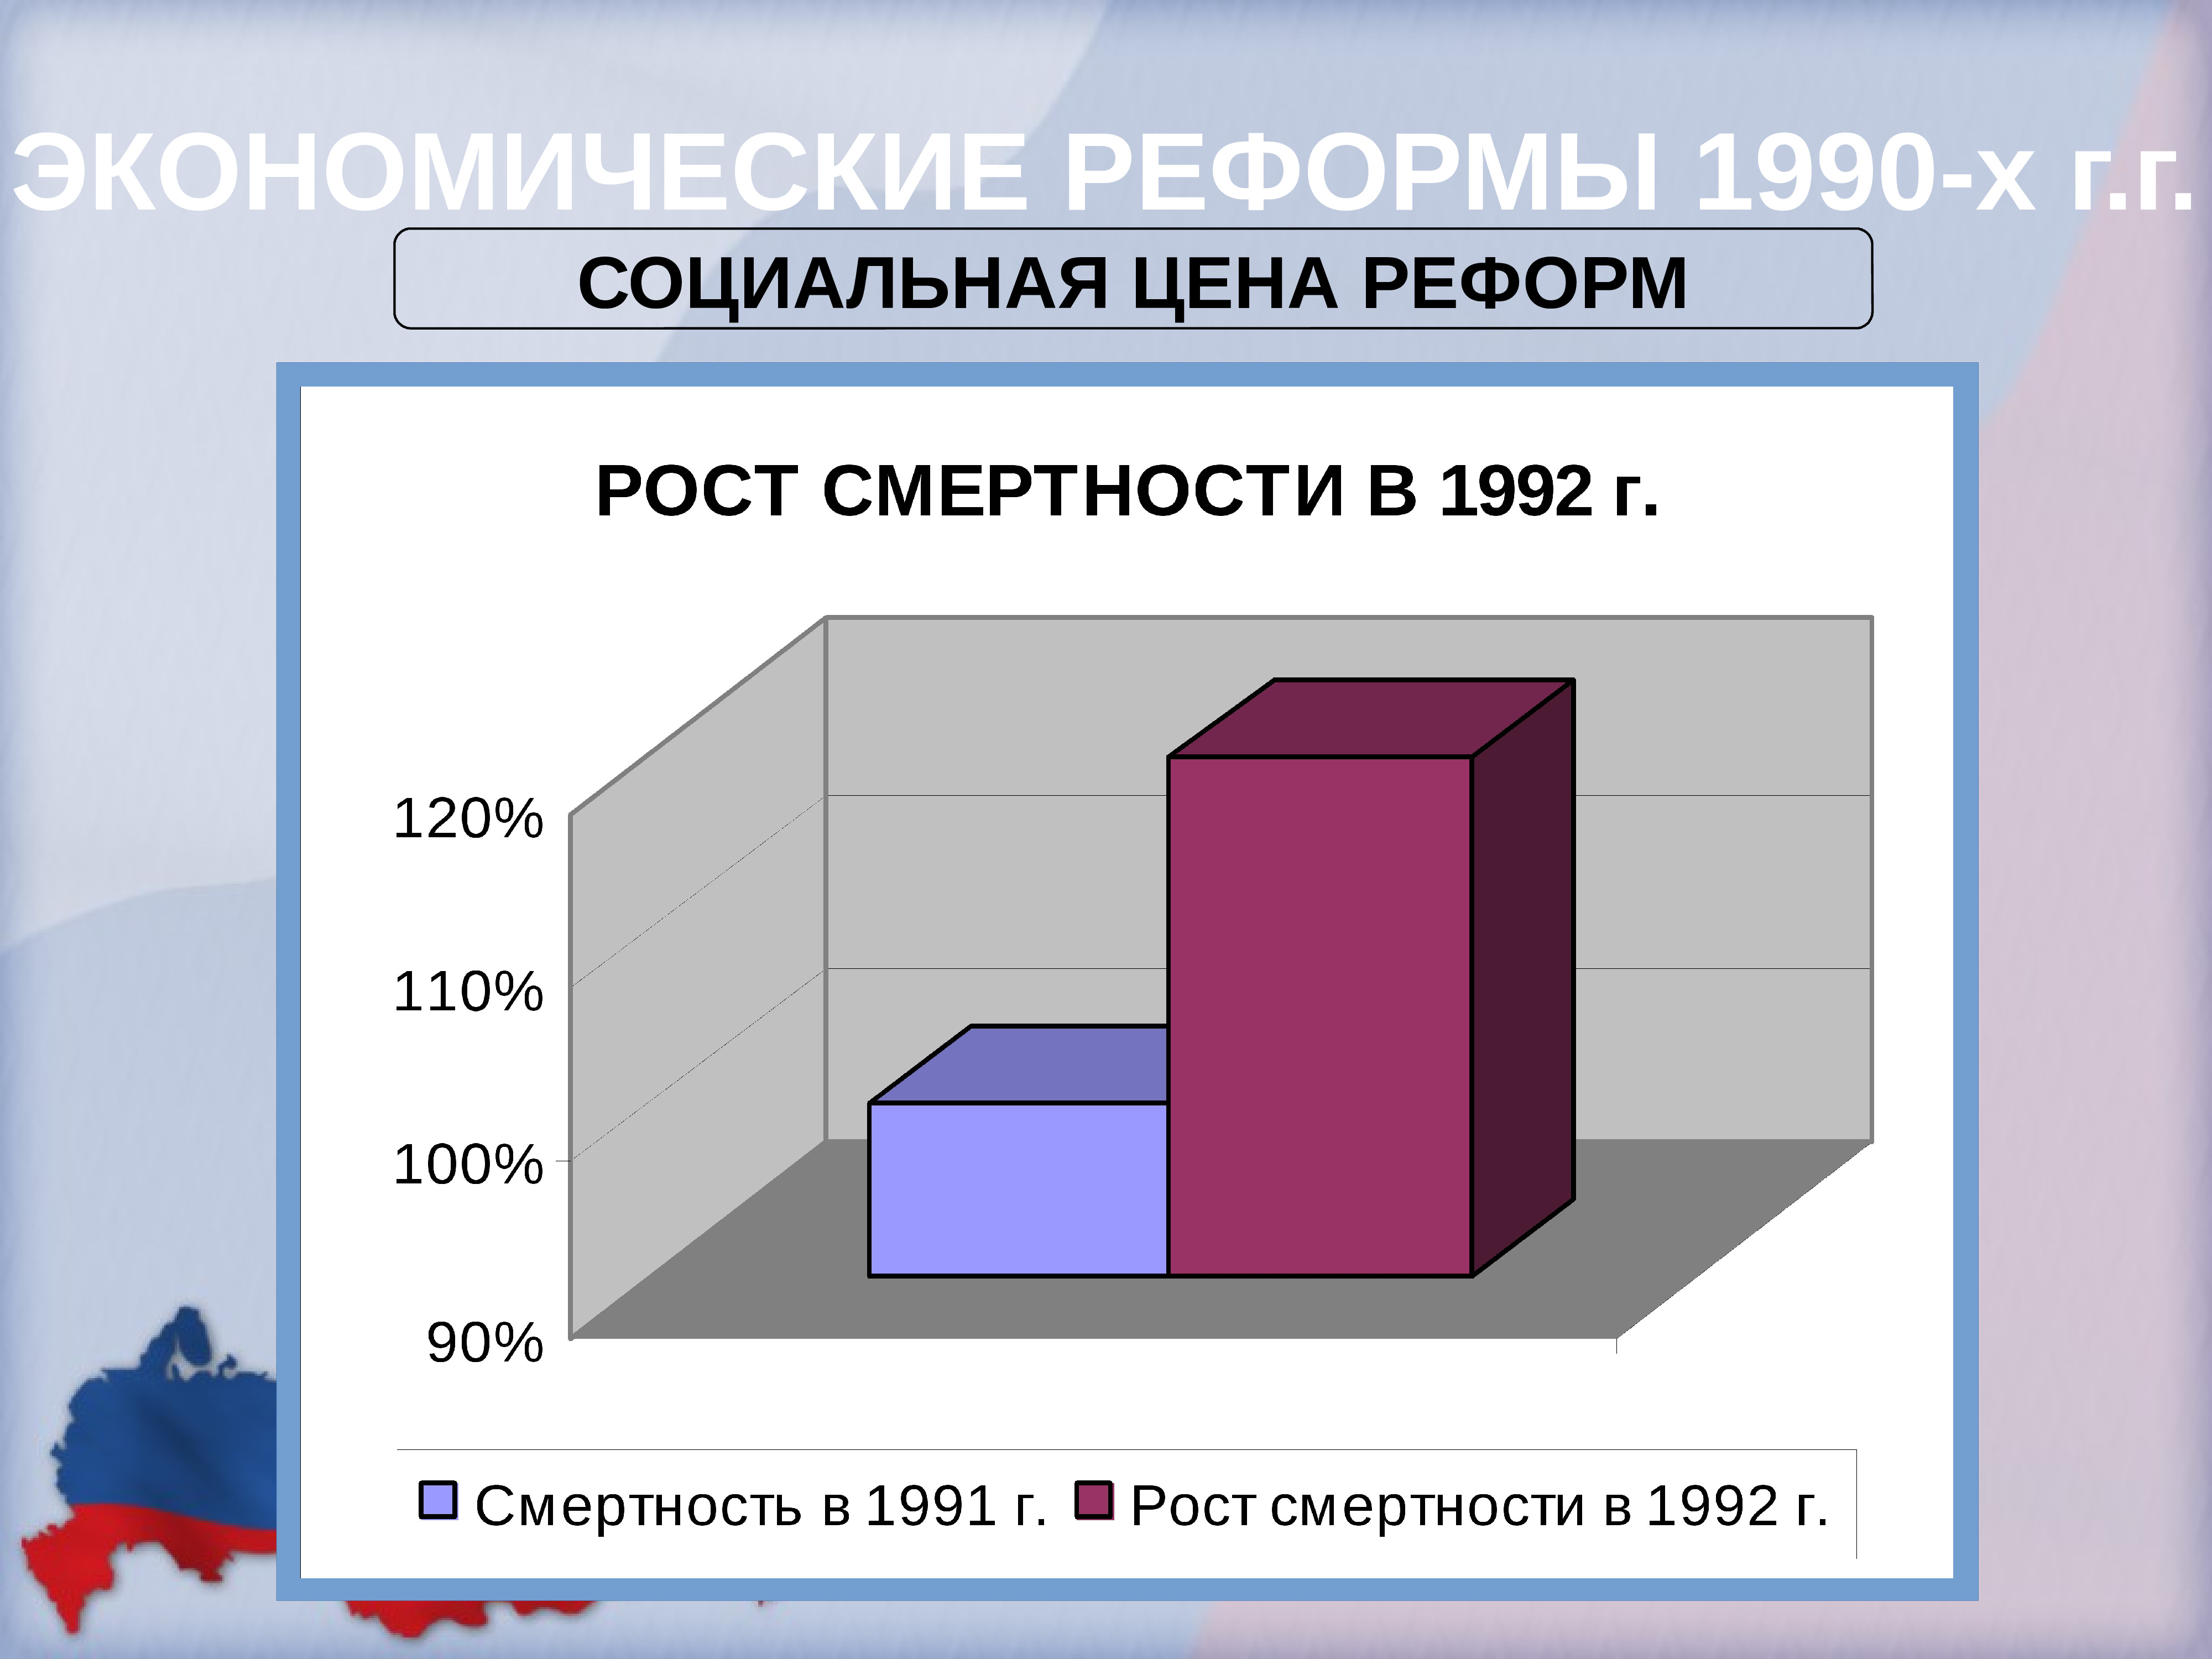 1990 е в экономике россии. Экономические реформы 1990-х. Экономические реформы в России 1990-е годы. Экономические преобразования 1990. Этапы преобразований в экономике России в 1990-е г.г.